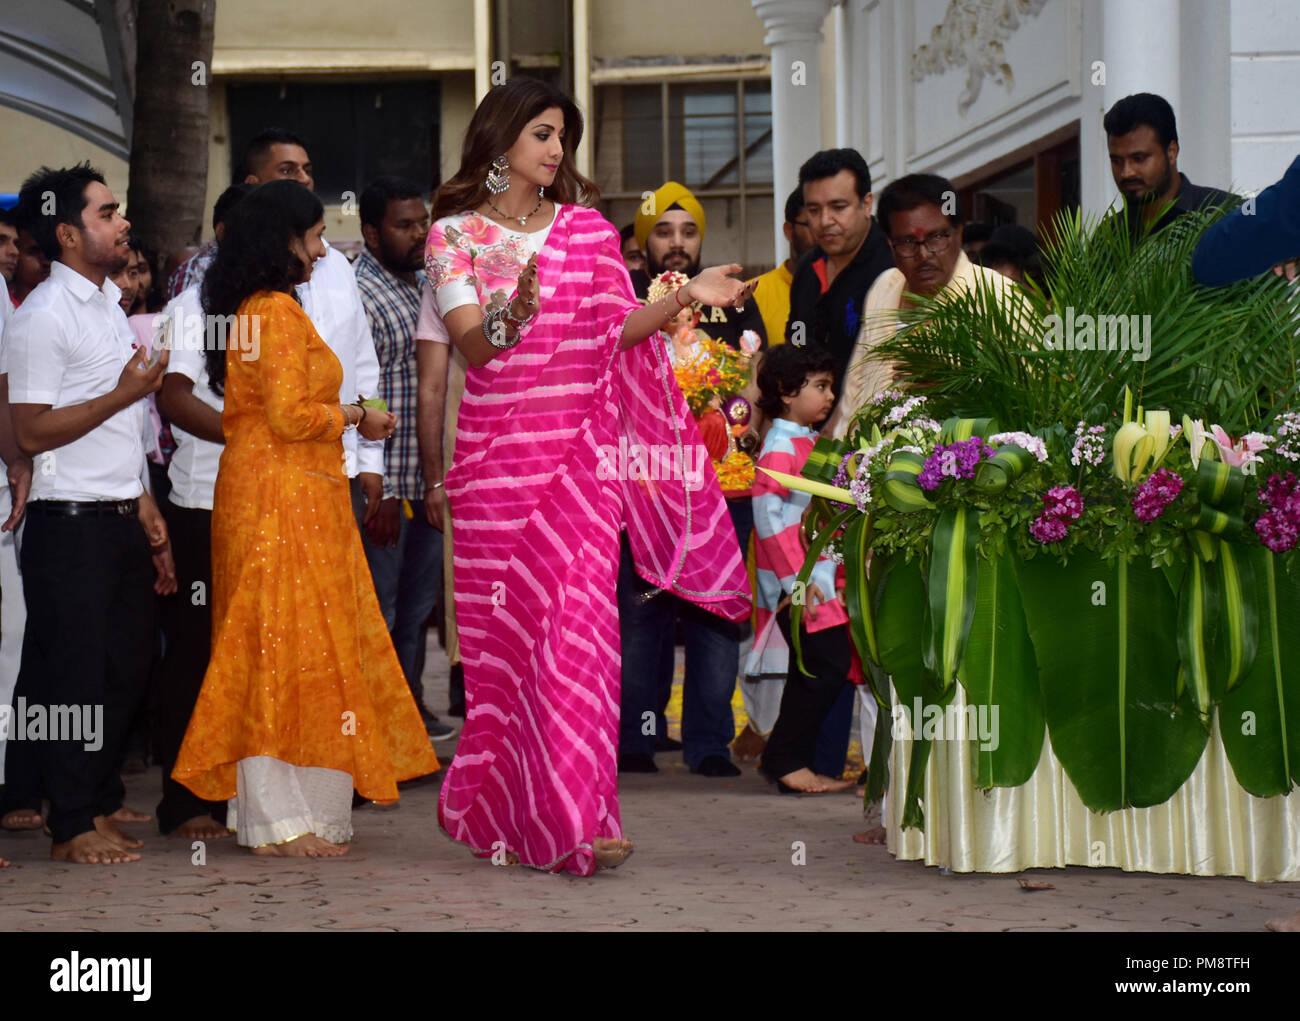 Indische Schauspielerin Shilpa Shetty gesehen Freude während einer Prozession an ihrem Haus. Eine Prozession für das Eintauchen der ein Idol der elefantenköpfige Hindu Gott Lord Ganesh, Hindu devotees home Idole von Lord Ganesha, um seinen Segen für Weisheit und Wohlstand zu berufen. Stockfoto